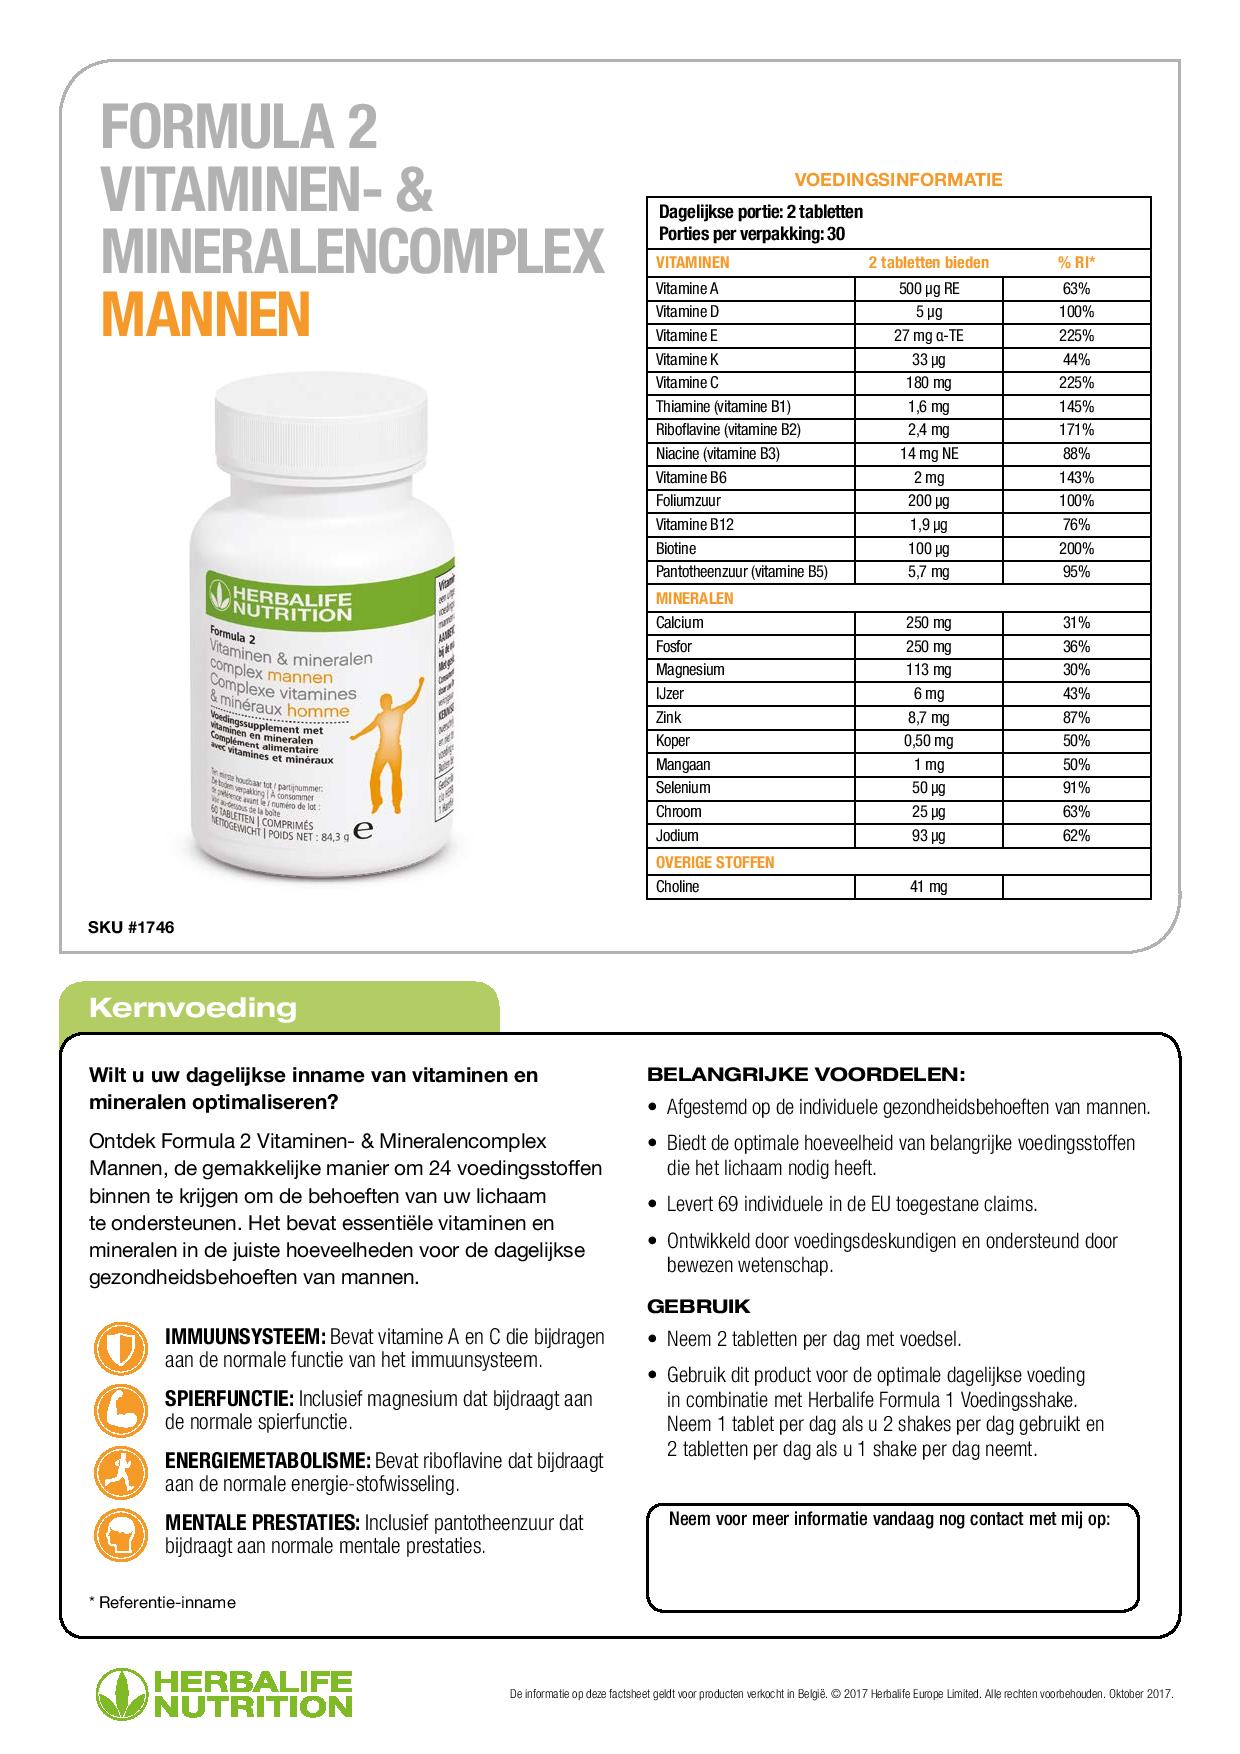 Formula 2 Vitaminen- & Mineralencomplex Mannen Ingrediënten